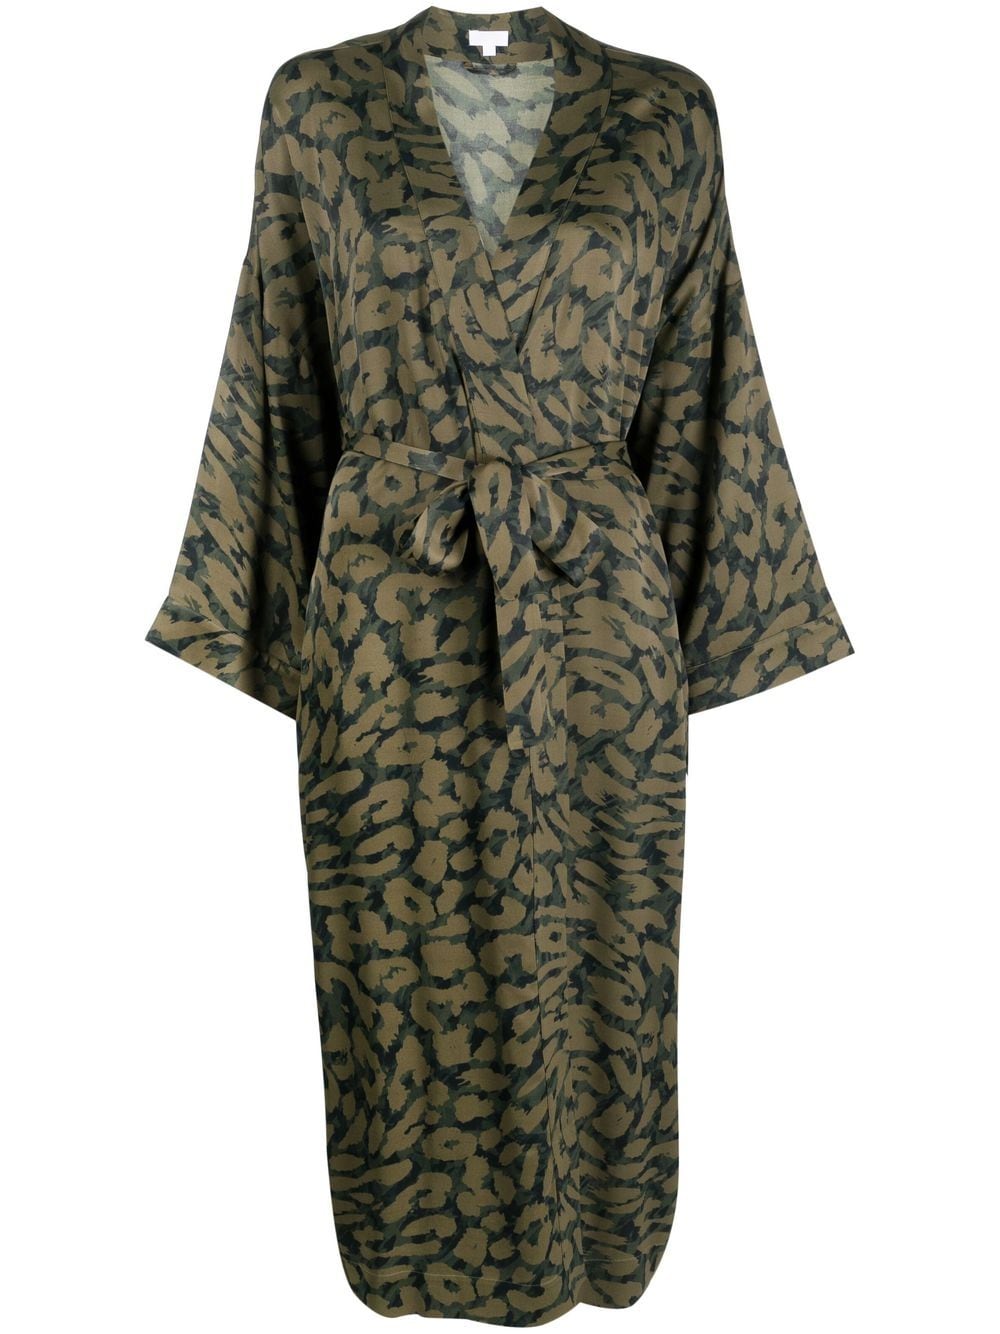 Lala Berlin leopard print wrap dress